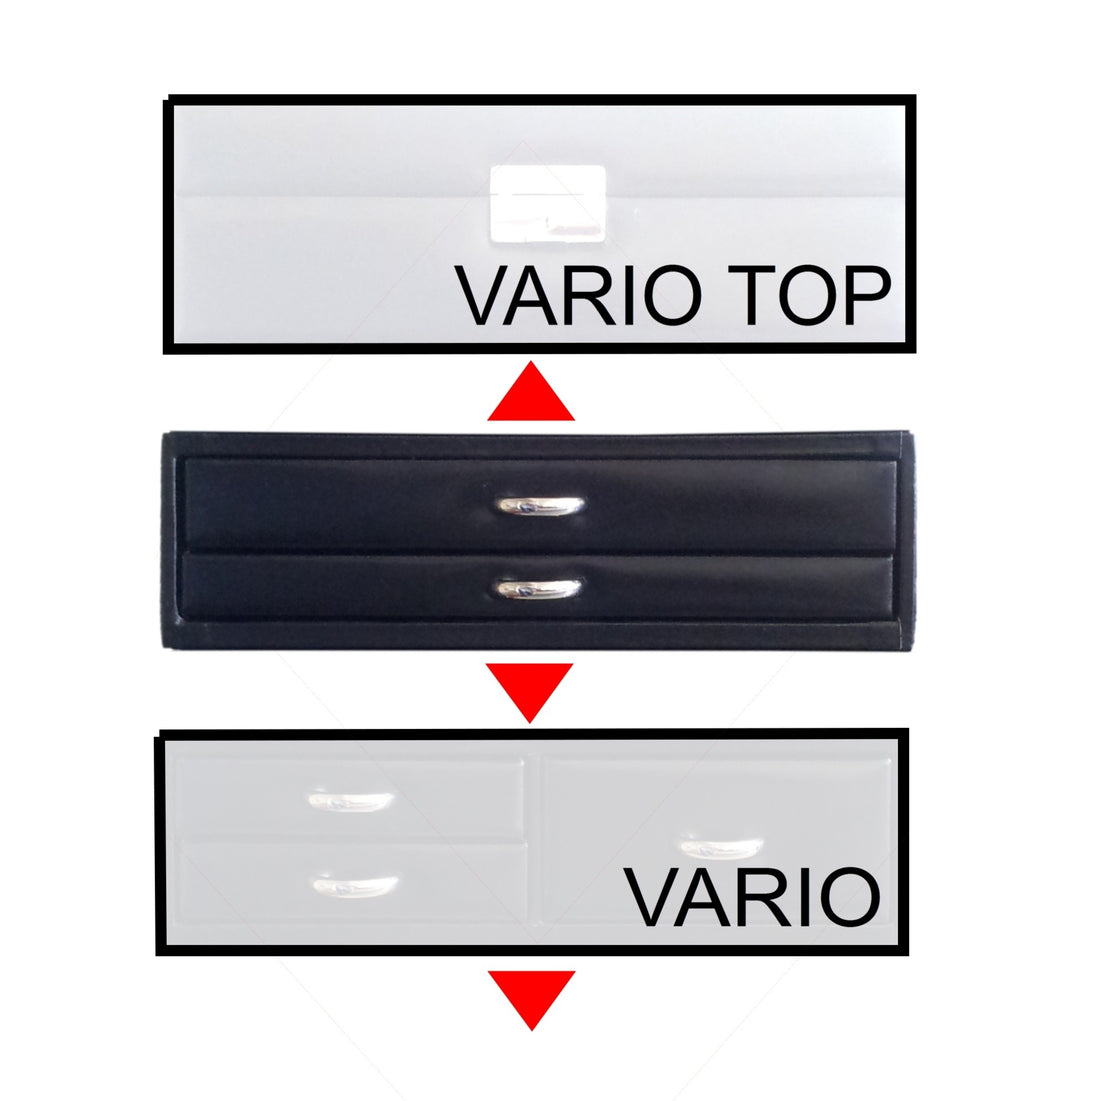 Módulo standard VARIO anéis vario / preto (pele)